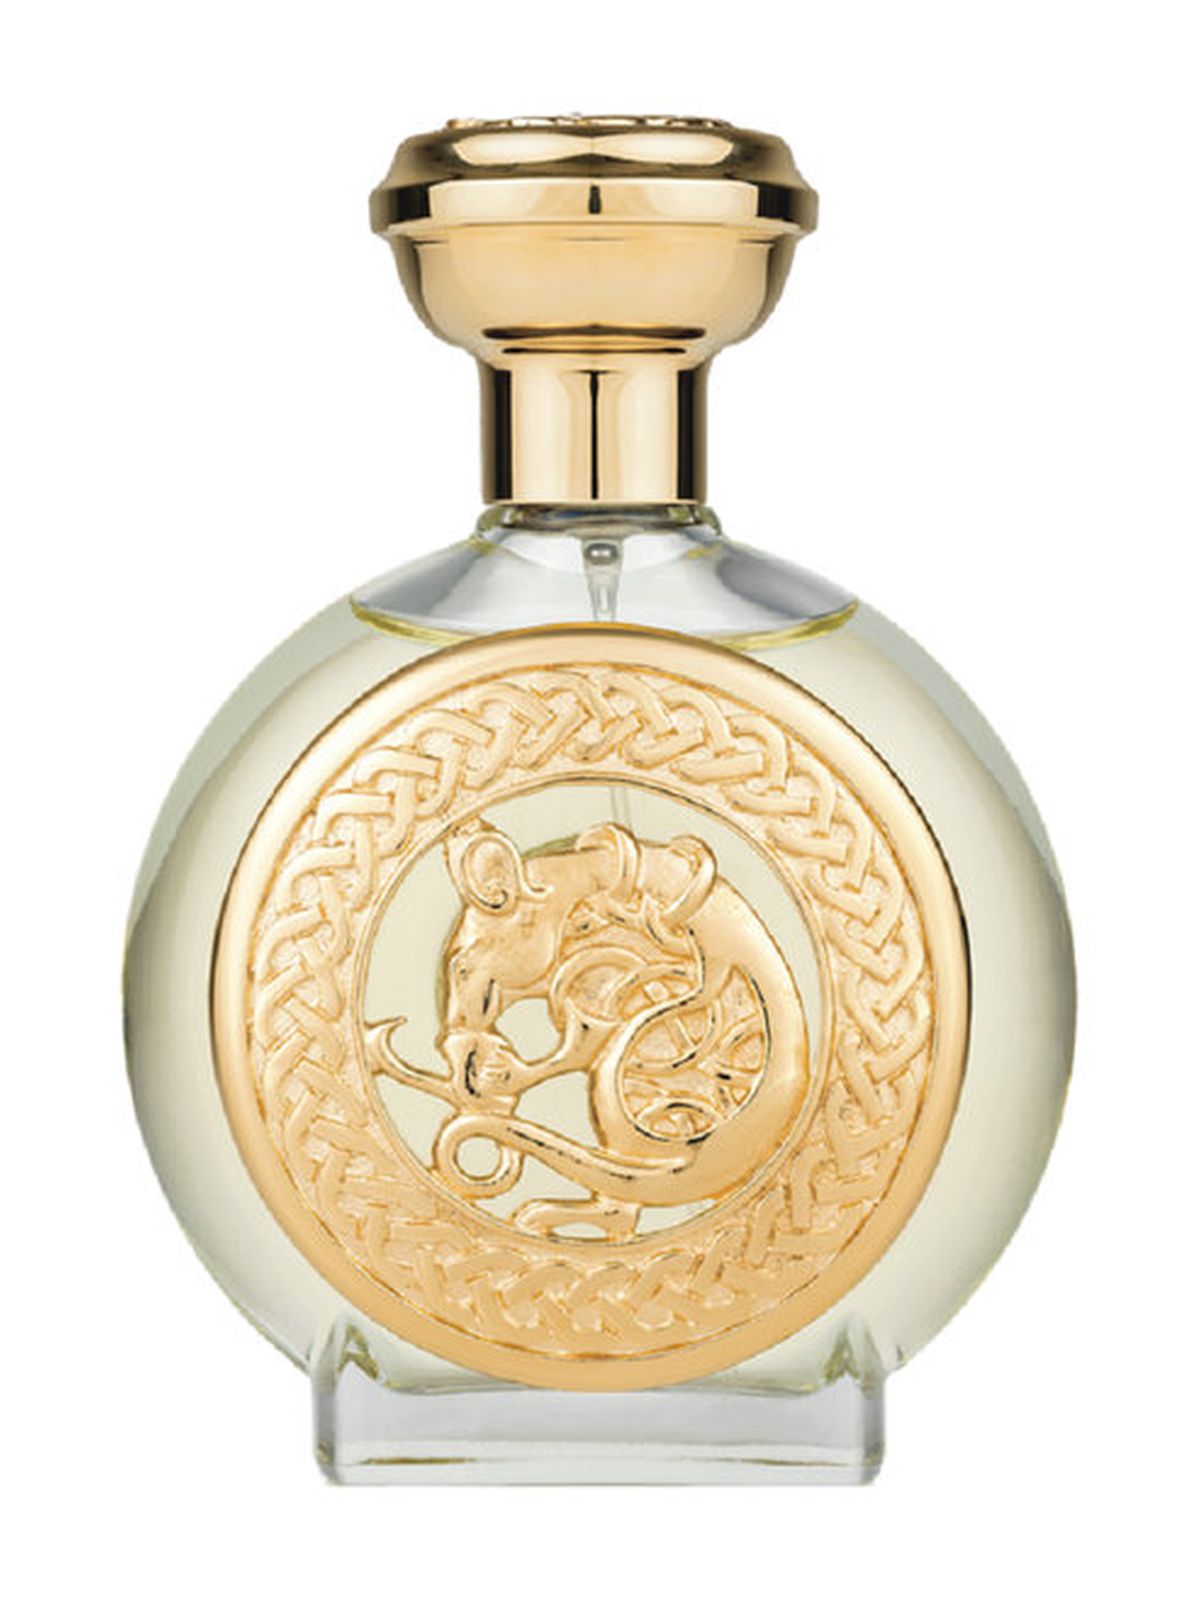 Духи Boadicea the Victorious Exclusive Collection Aurica Parfum ключи жизненного успеха тетрадь планирования